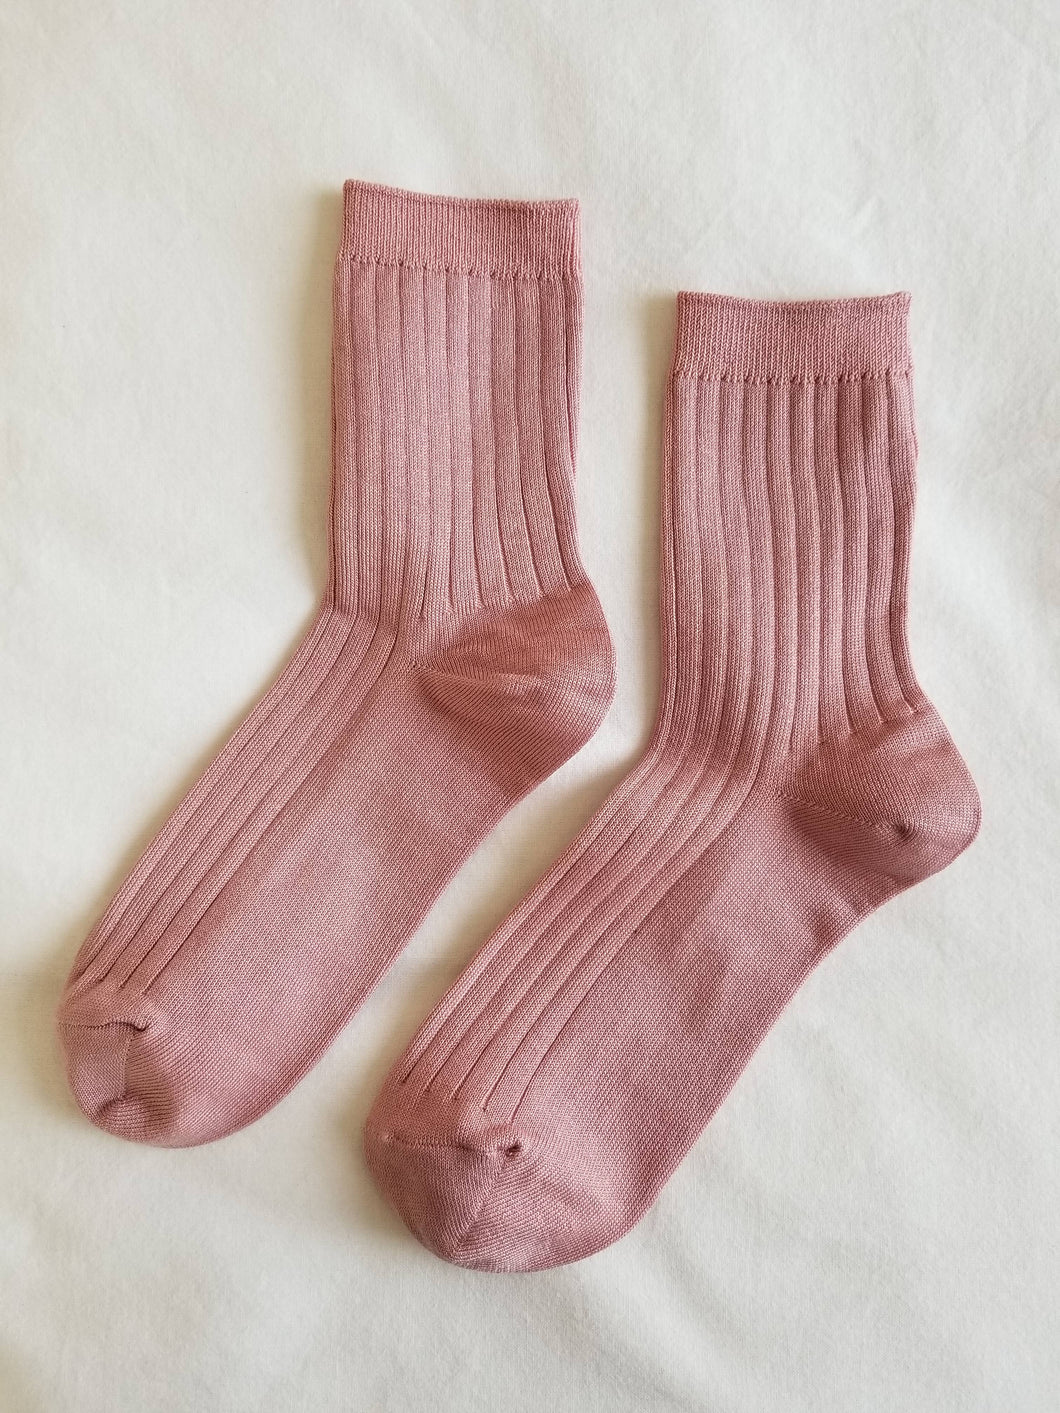 Her Socks - Desert Rose